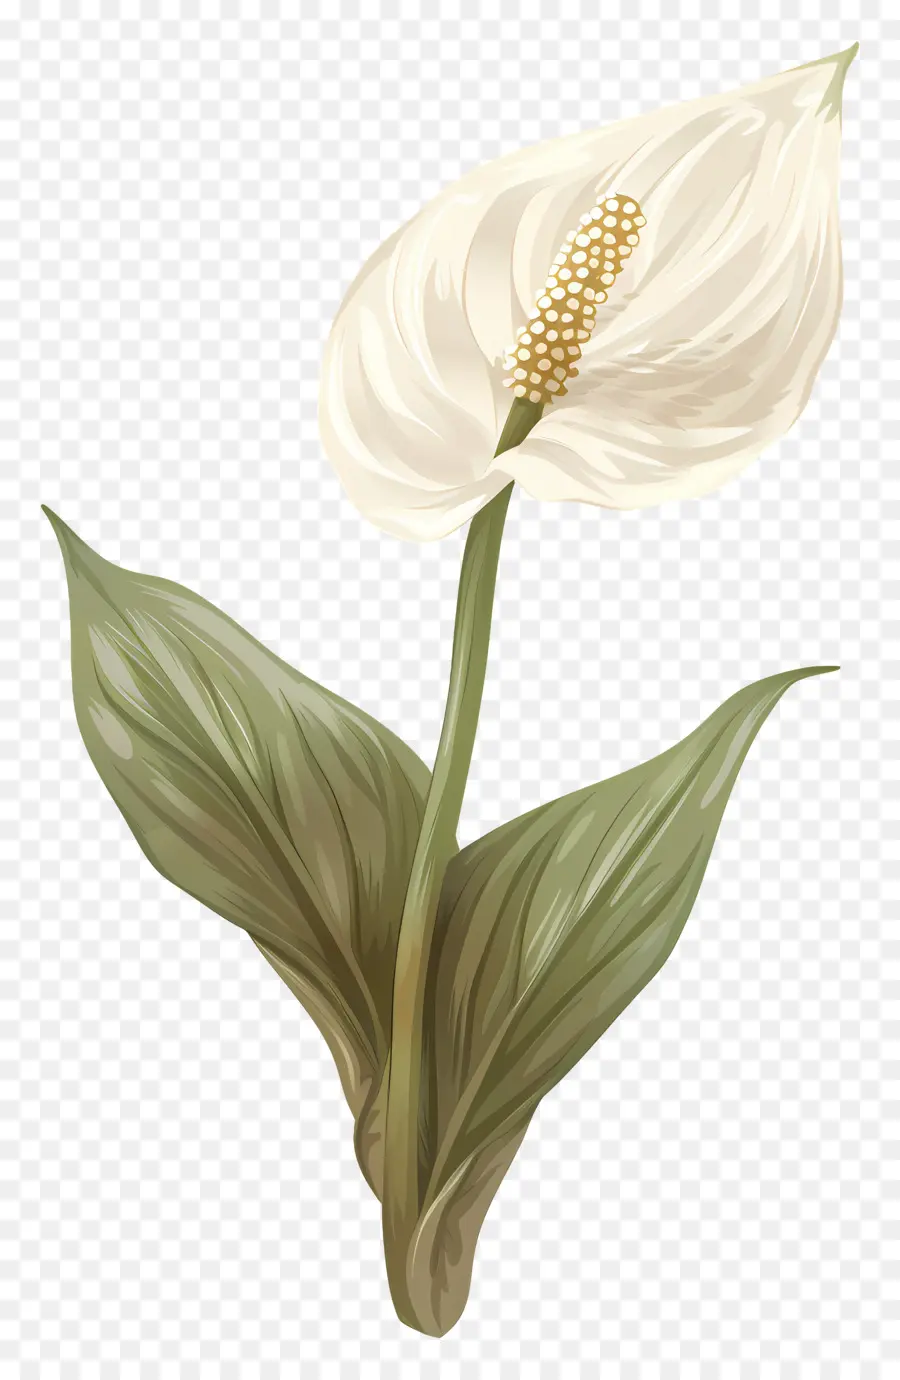 polline di pianta fiorite da giglio singola pace calma - Calla bianca sana con polline